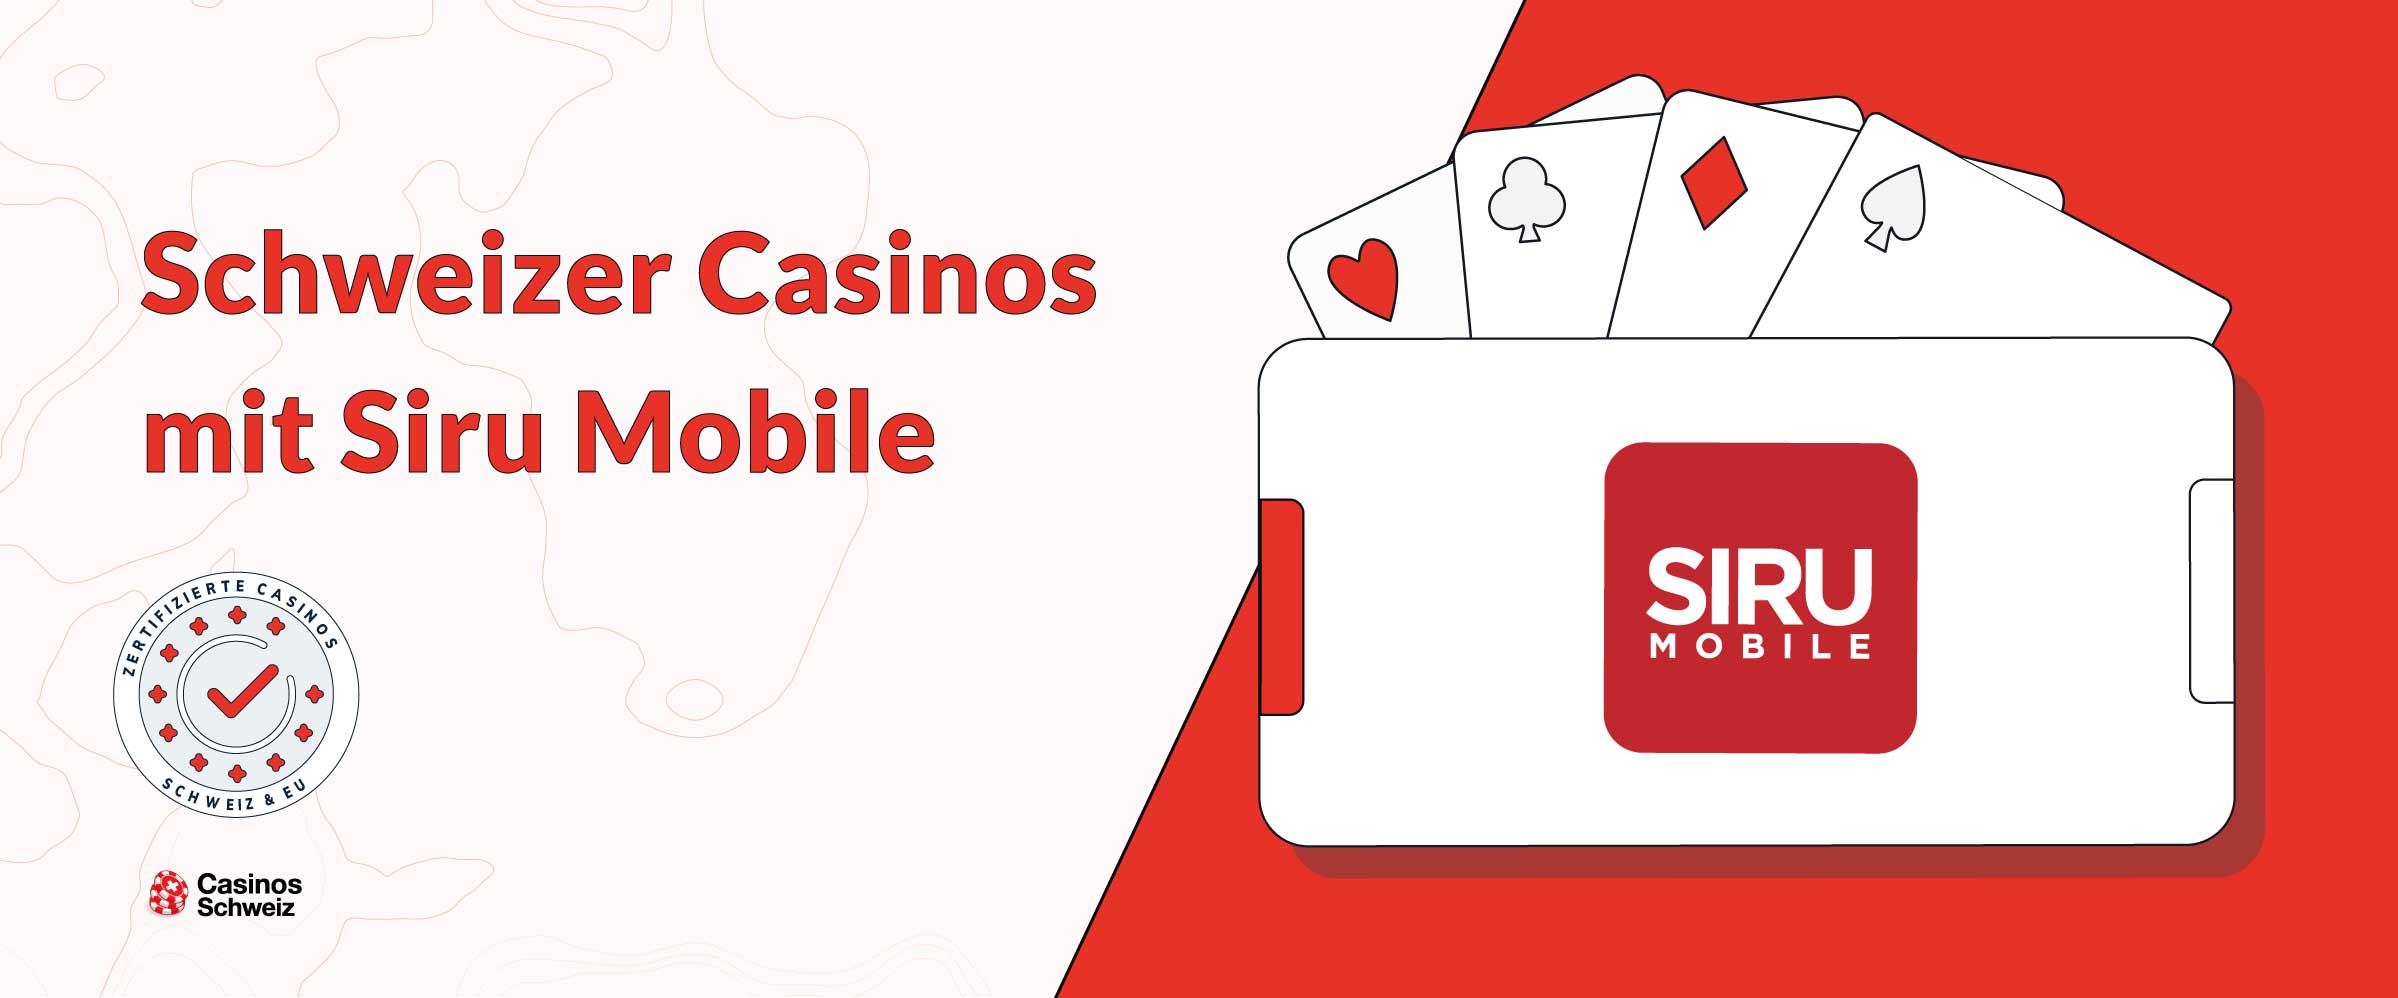 Schweizer Casinos mit Siru Mobile Payment 